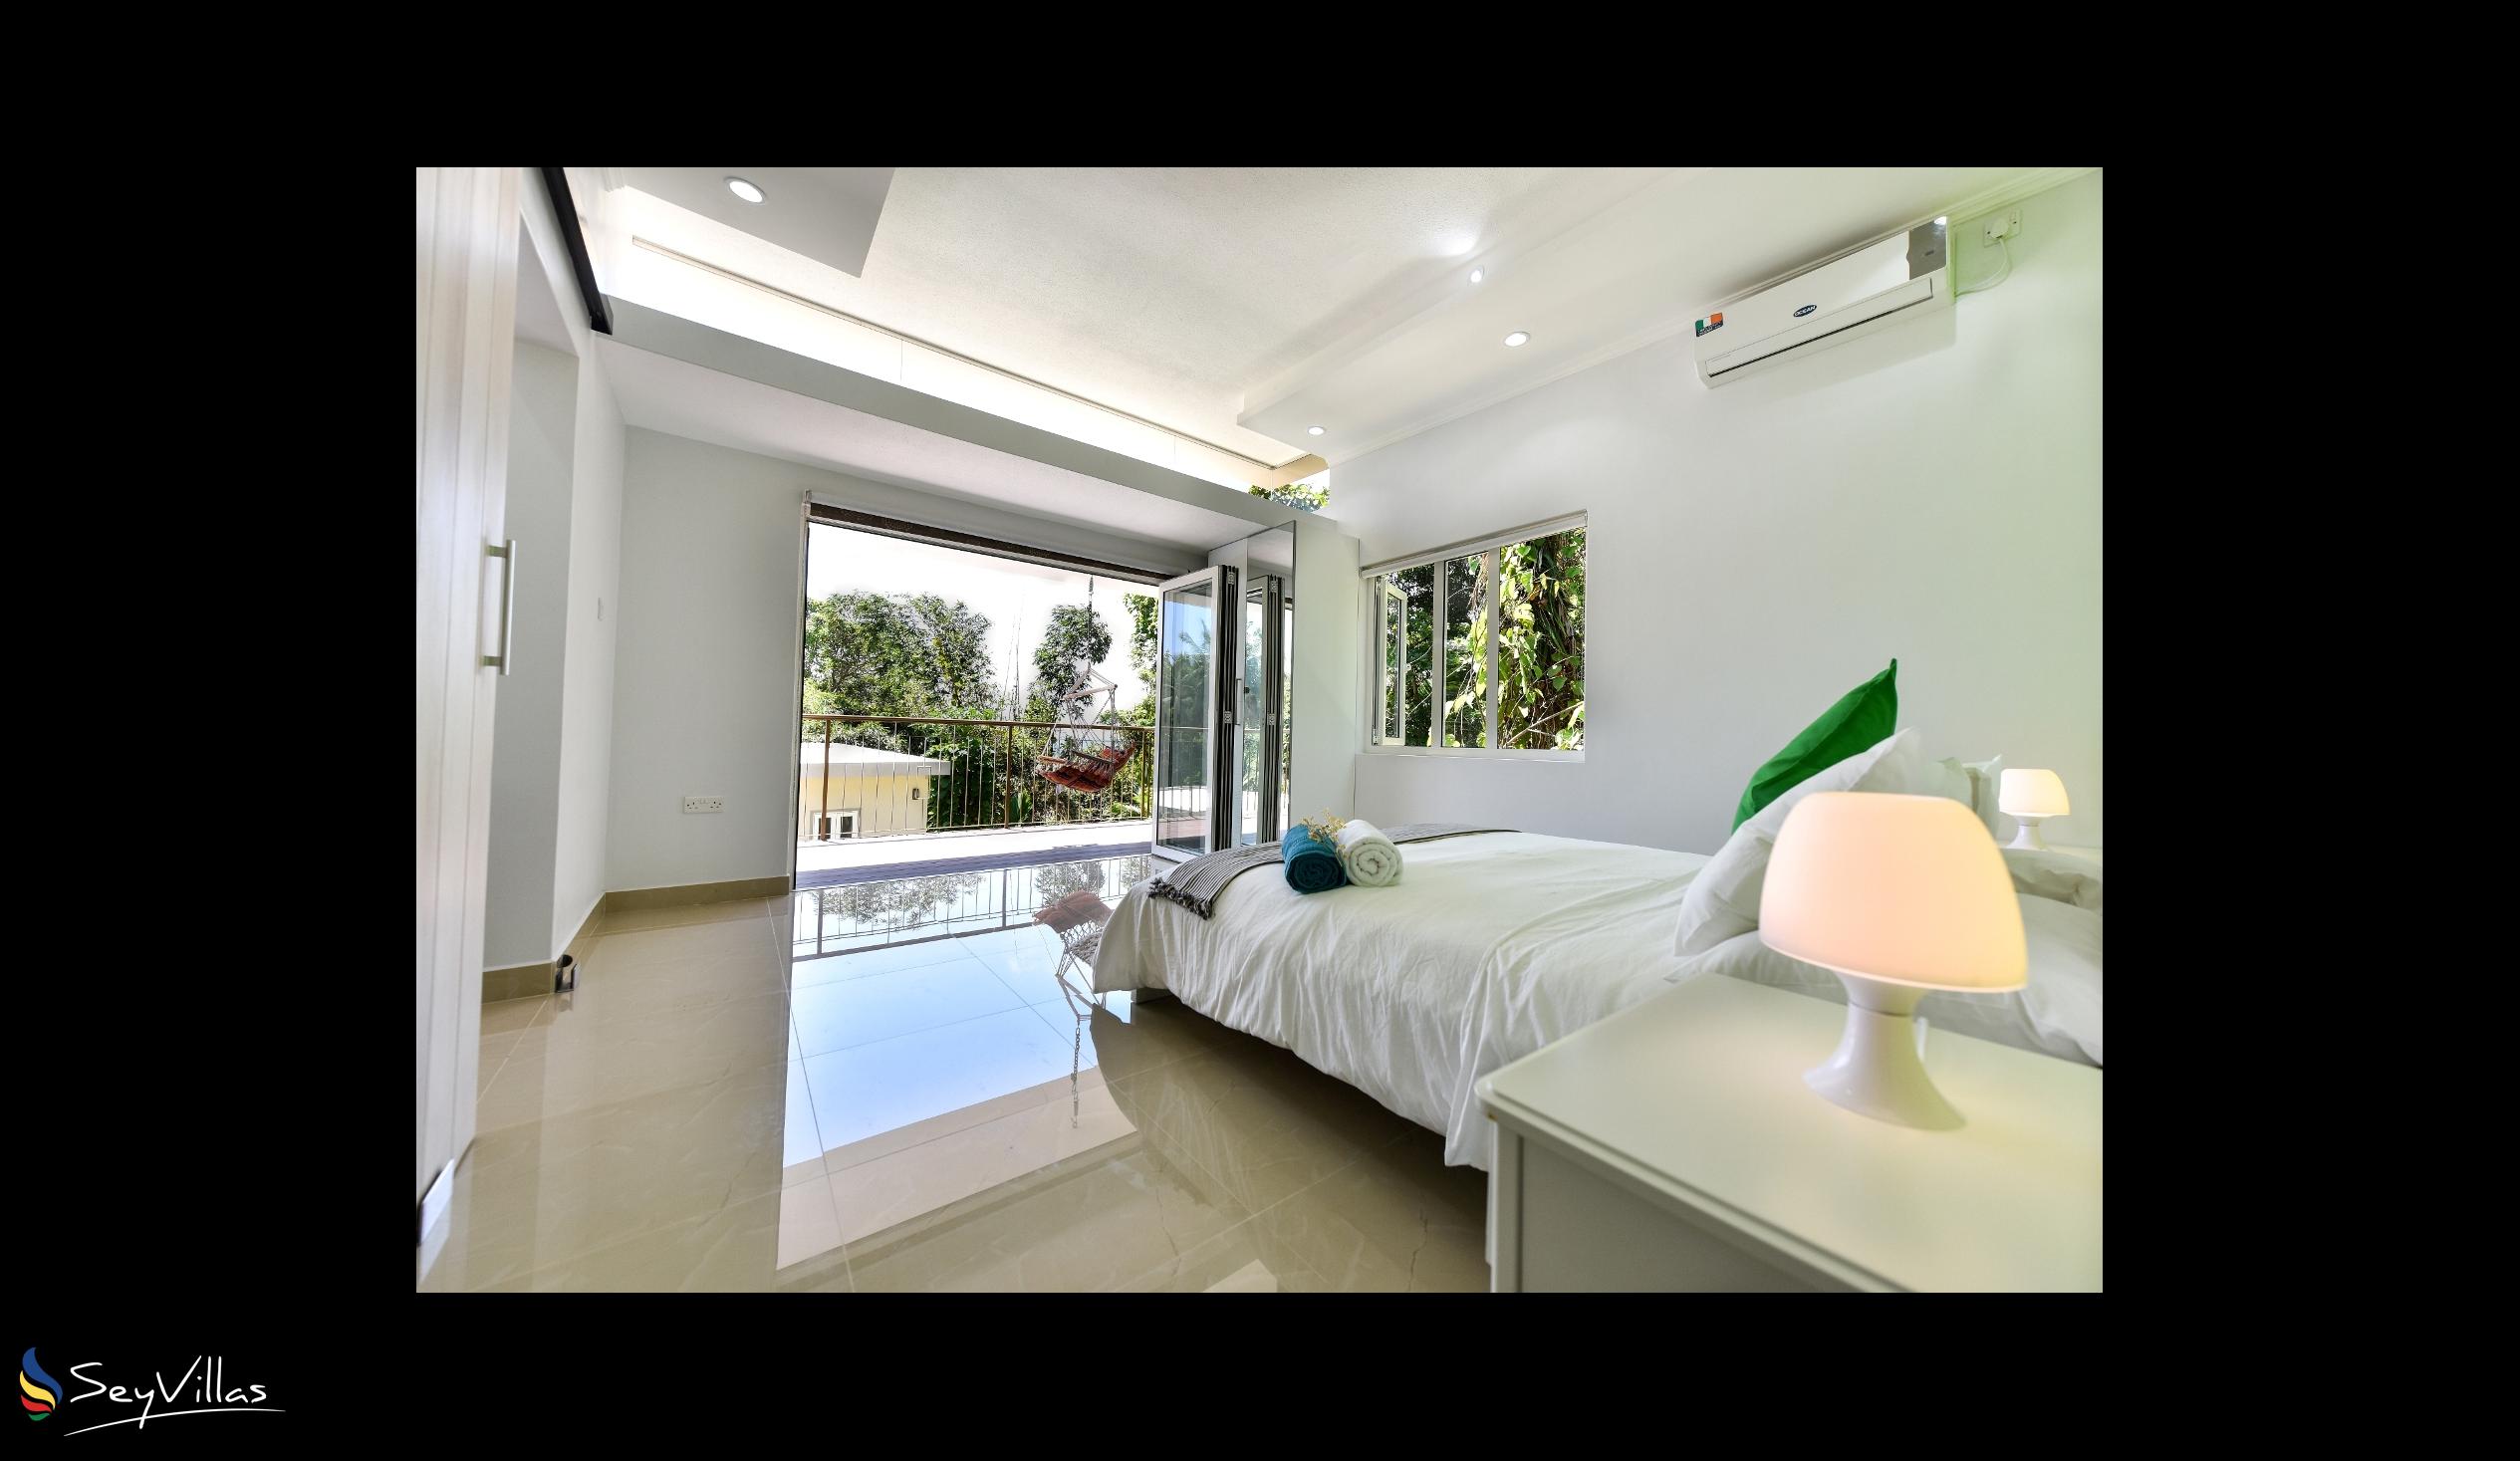 Foto 13: Moulin Kann Villas - Appartamento con 1 camera da letto - Mahé (Seychelles)